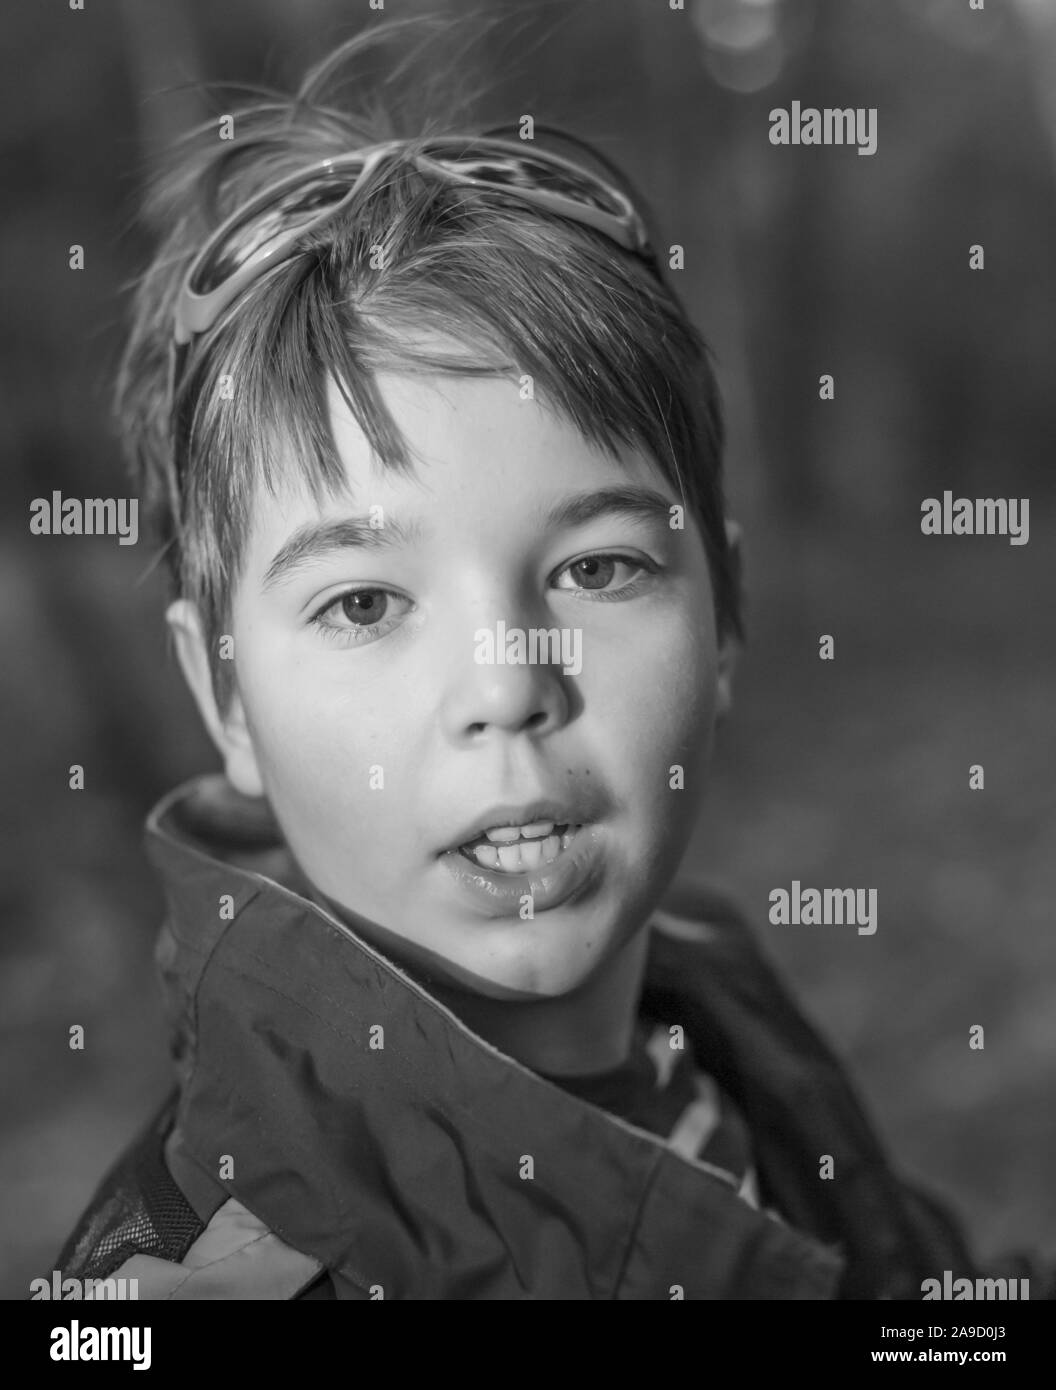 Eine schöne junge Portrait, schönes Kind mit vertrauensvollen Augen schließen. Schwarz-weiß Foto. Stockfoto